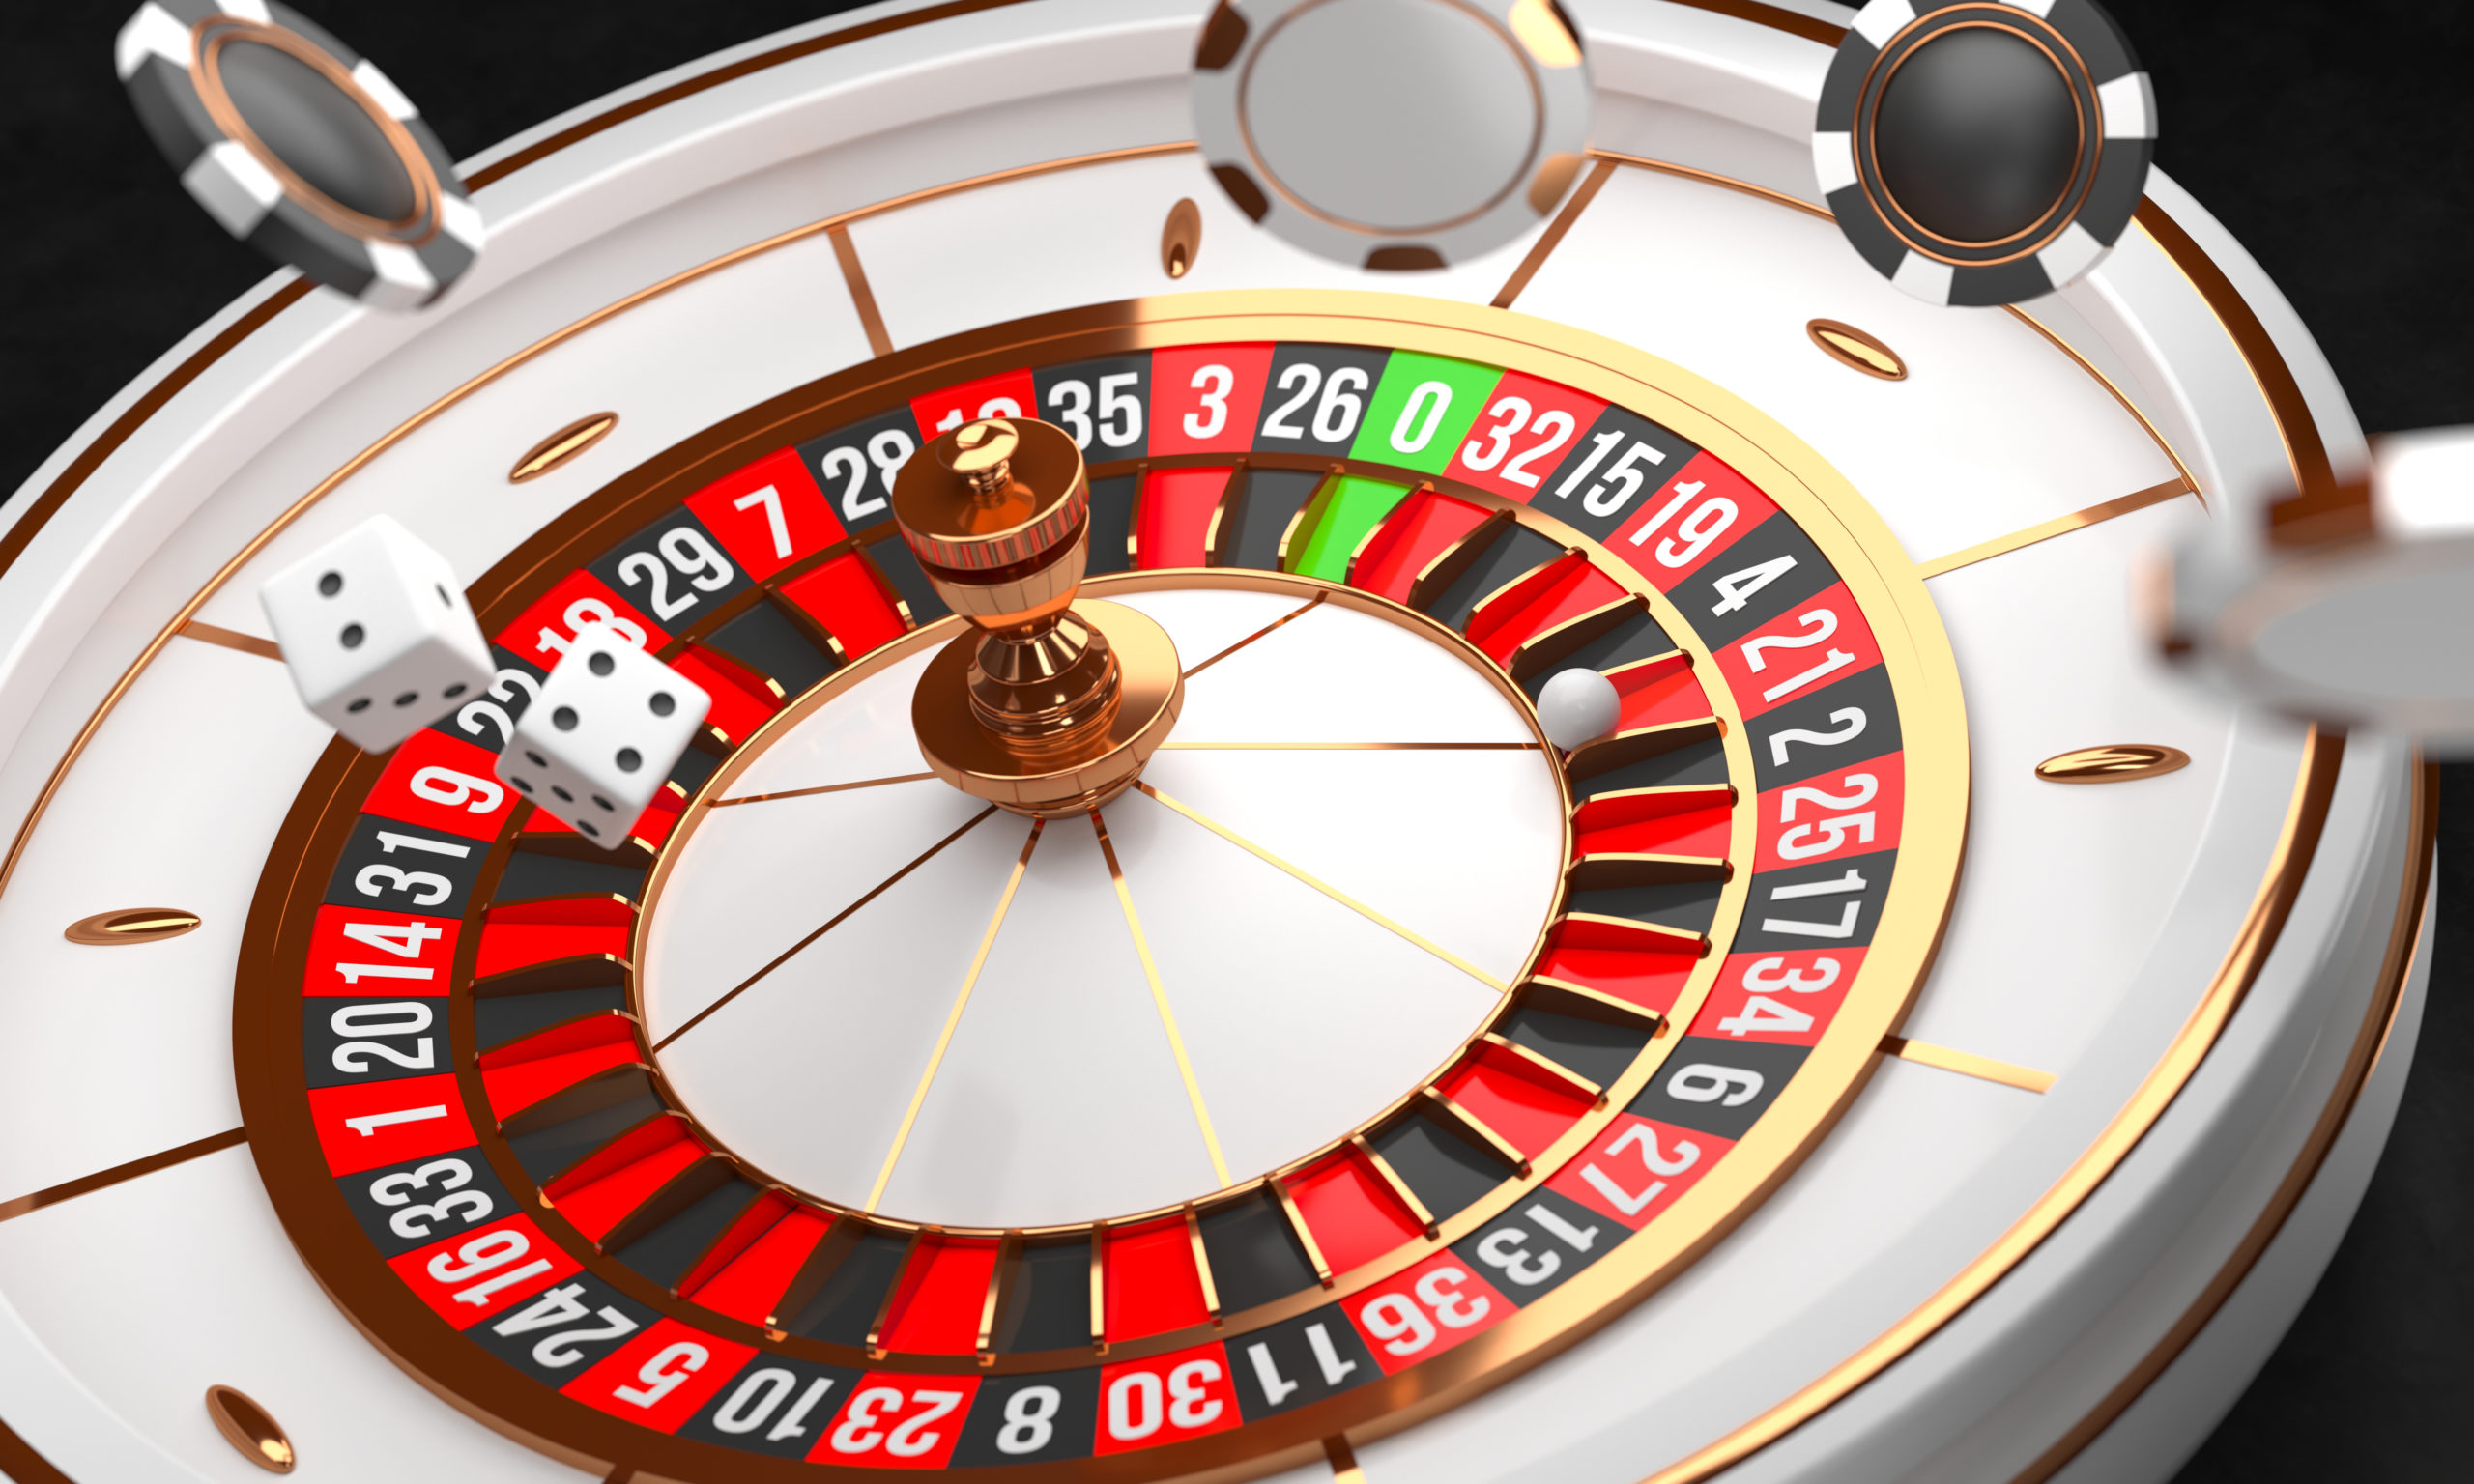 Stratégia rulety: Ako vyhrať v rulete